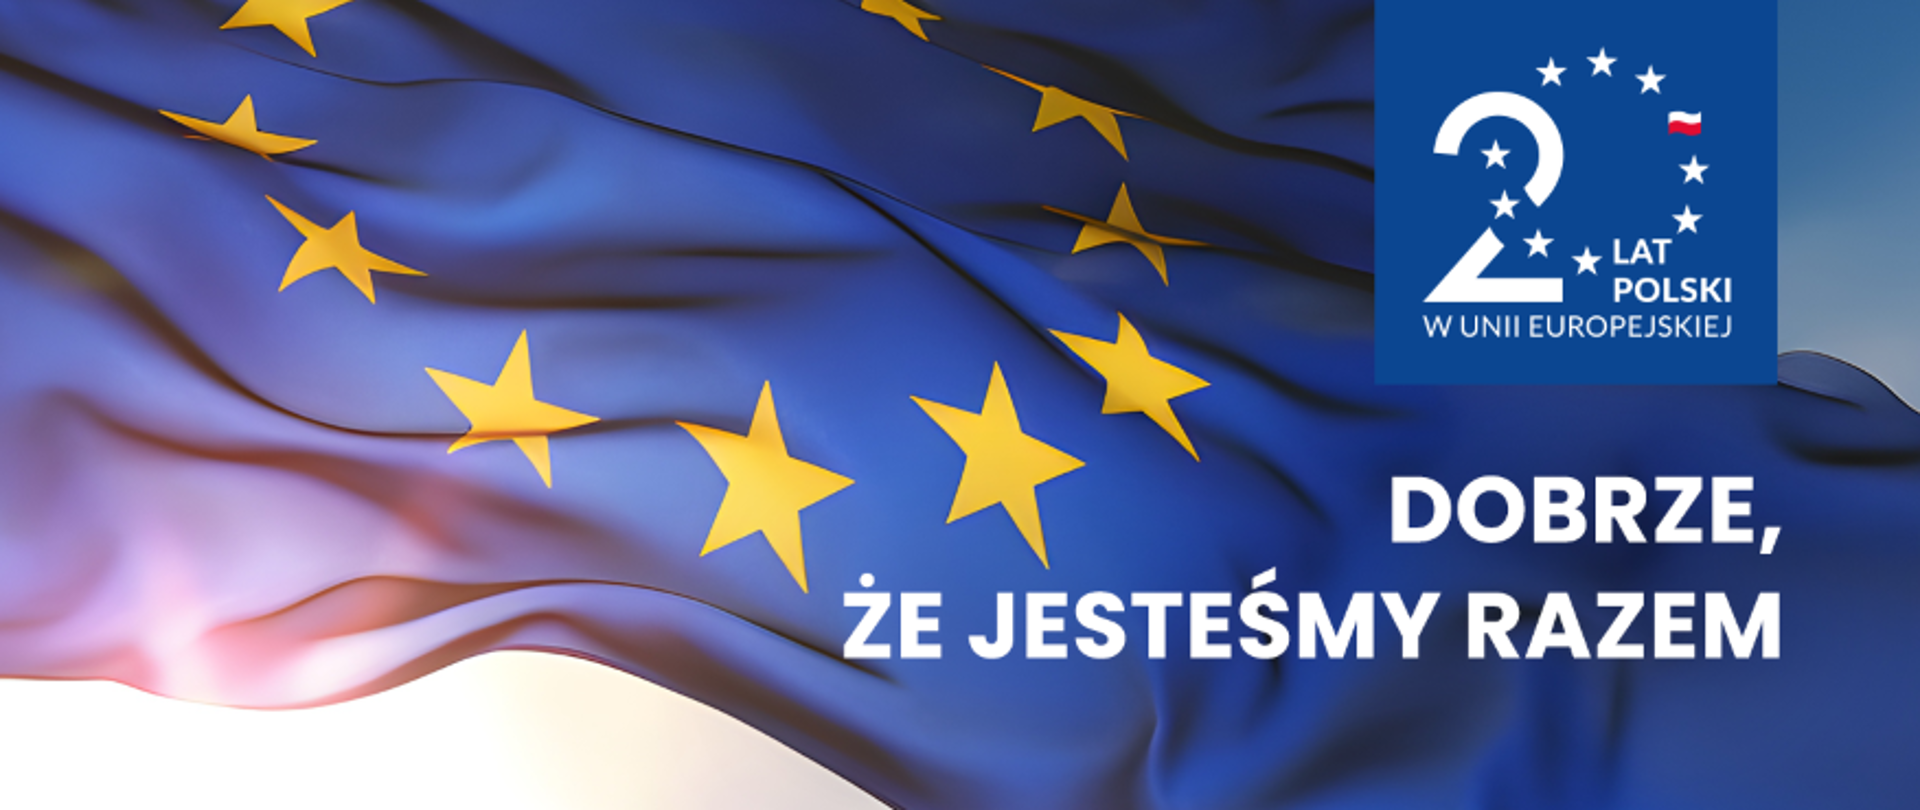 20 lat Polski w Unii Europejskiej.